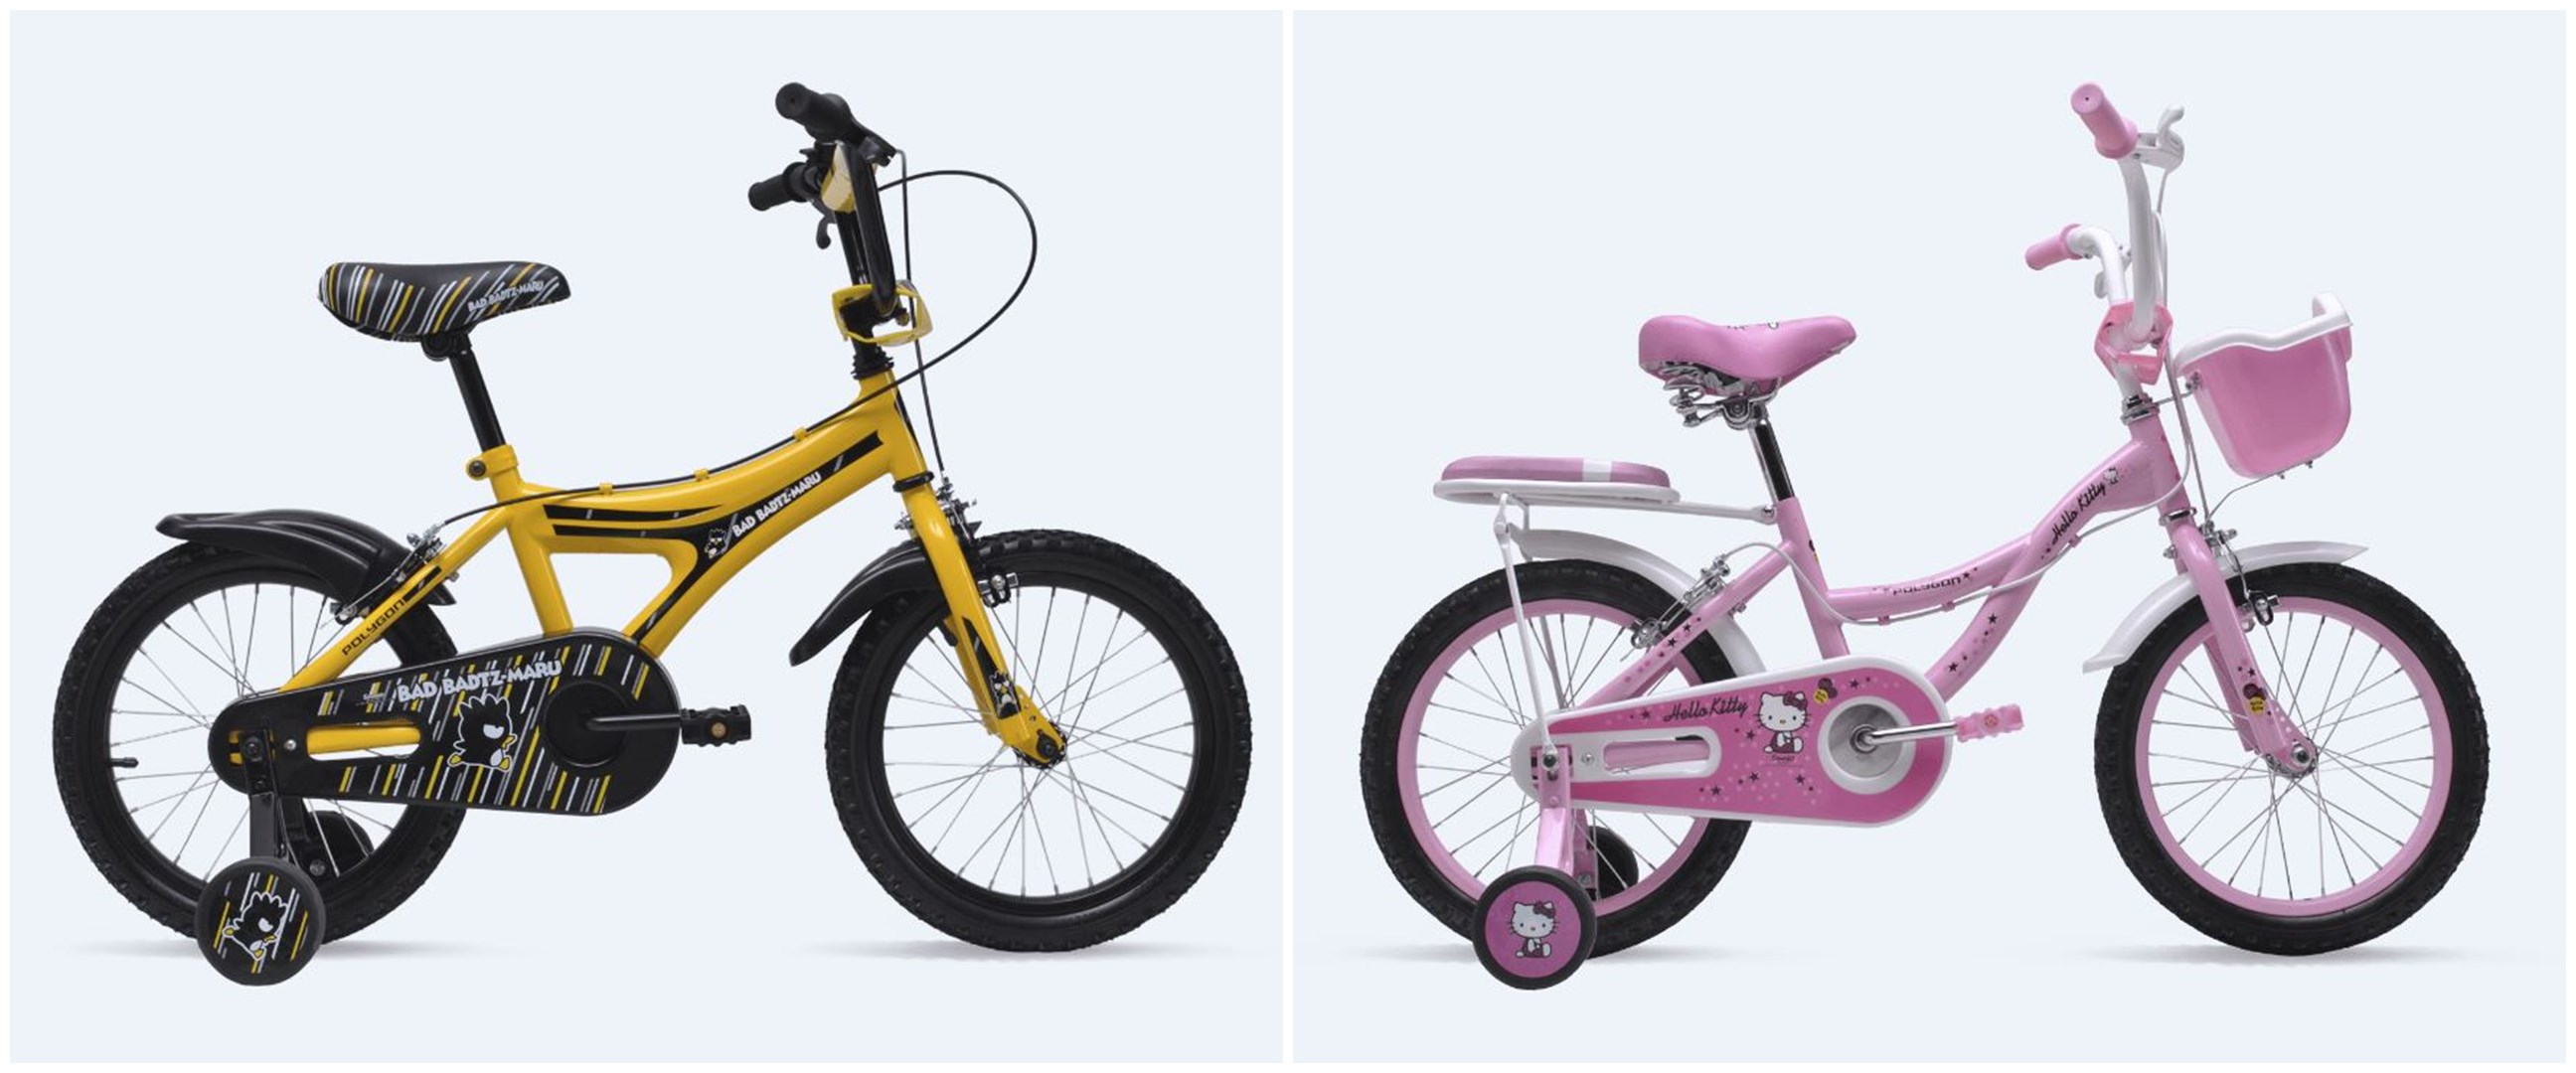  Harga sepeda anak  Polygon dan spesifikasinya nyaman serta 